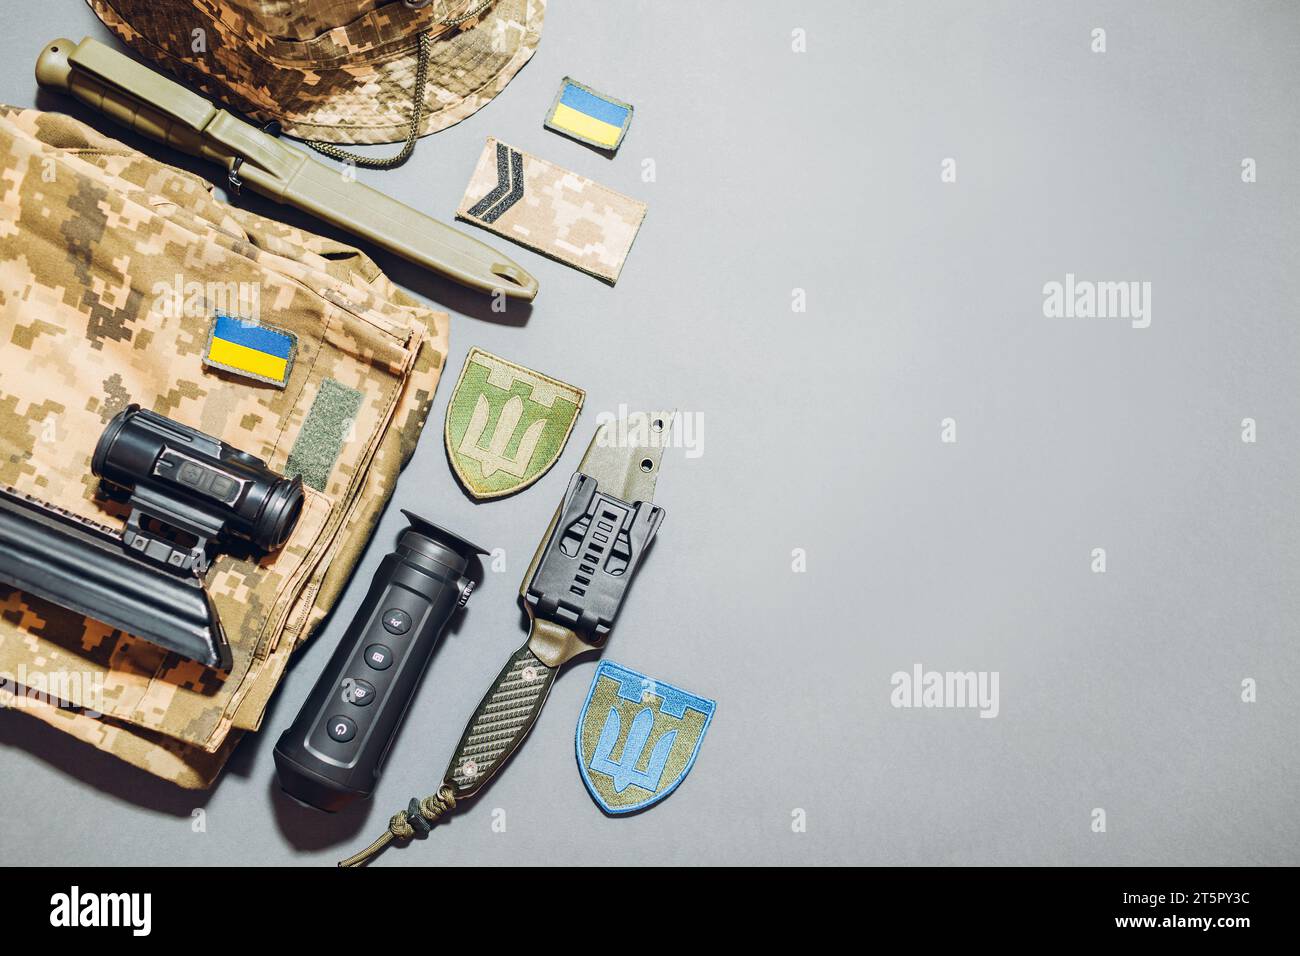 Ukrainische Militärausrüstung flach gelegt Hintergrund. Militäruniform, Accessoires, Wärmebildkamera, Munition, Messer mit Nationalflaggen und EM Stockfoto